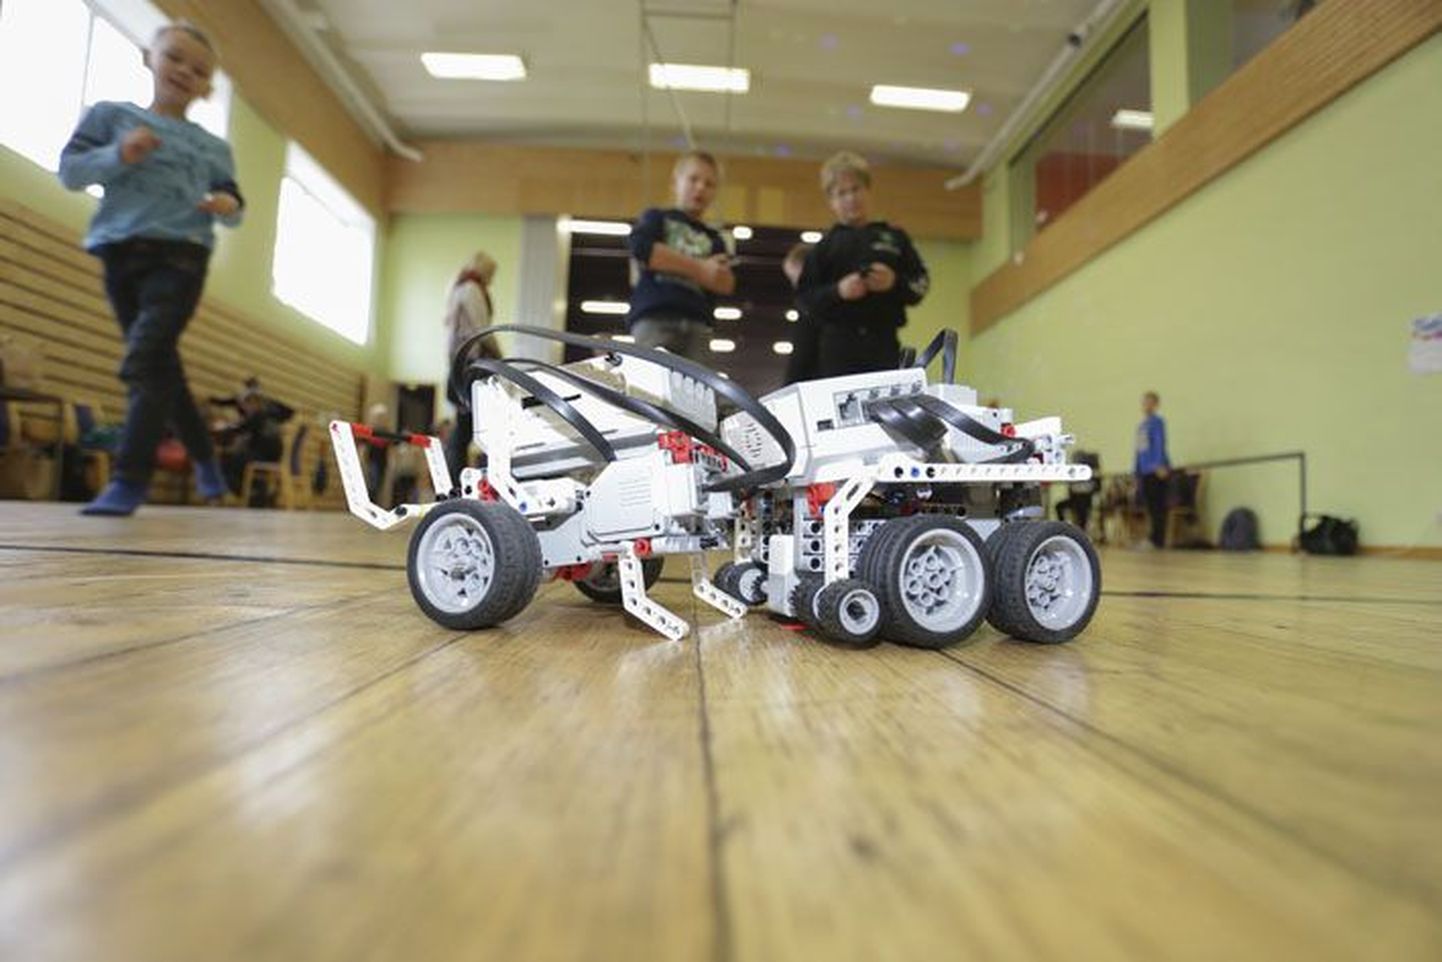 Robotite ehitamine ja nende valdamise oskus kogub järjest rohkem populaarsust ning ühtlasi meelitab kooliõpilasi oma oskusi võistlustules proovile panema.